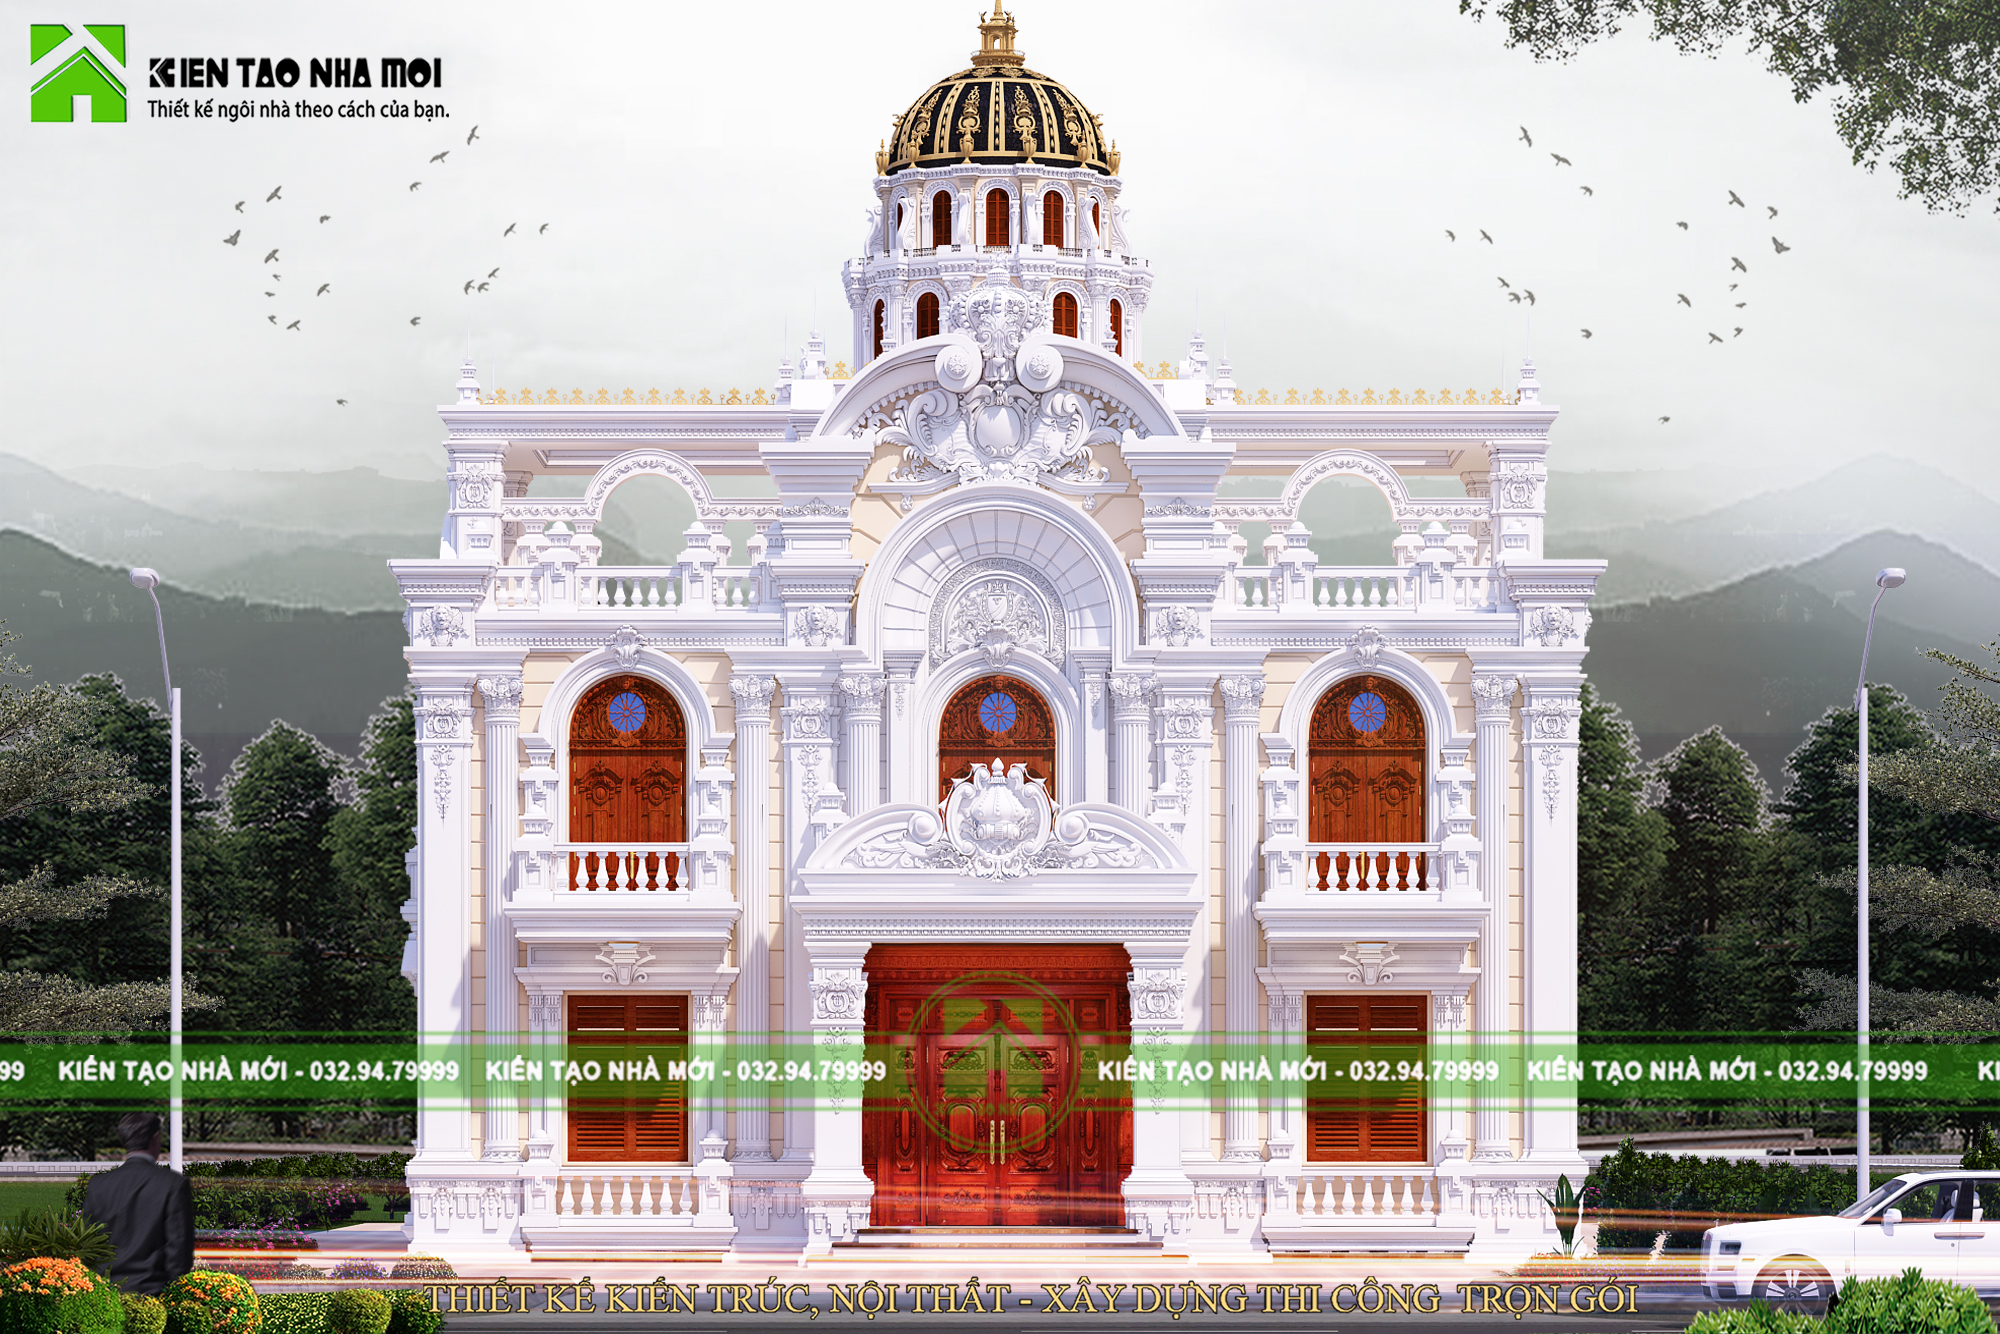 Thiết kế Biệt Thự tại Bắc Ninh Thiết kế lâu đài cổ điển 2 tầng đẳng cấp đẹp 1587266670 3